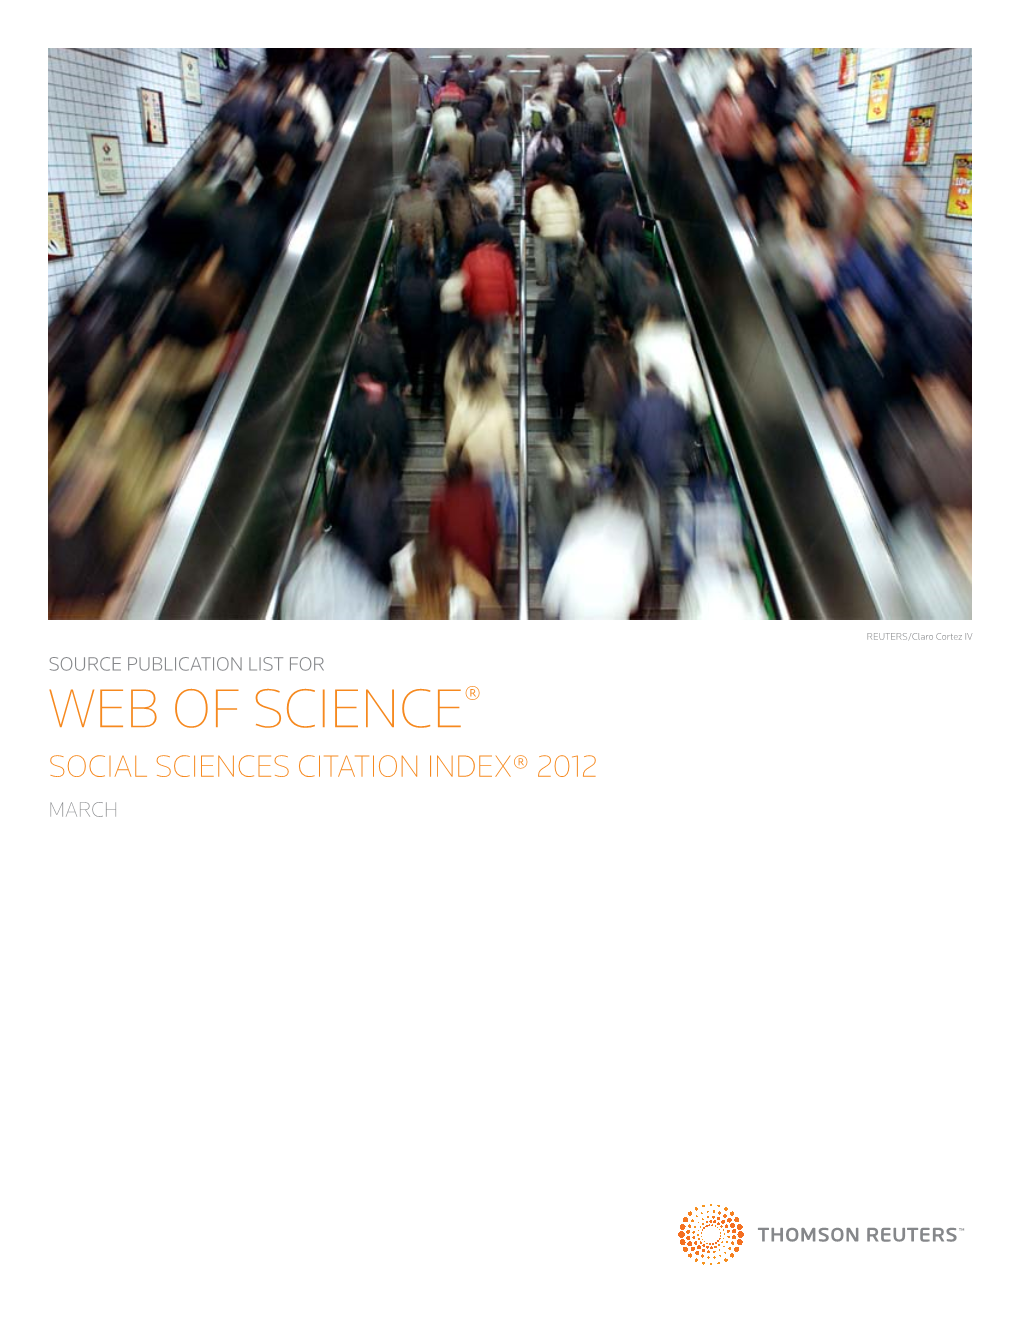 Web of Science® Social Sciences Citation Index® 2012 March Web of Science® - Social Sciences Citation Index Source Publications